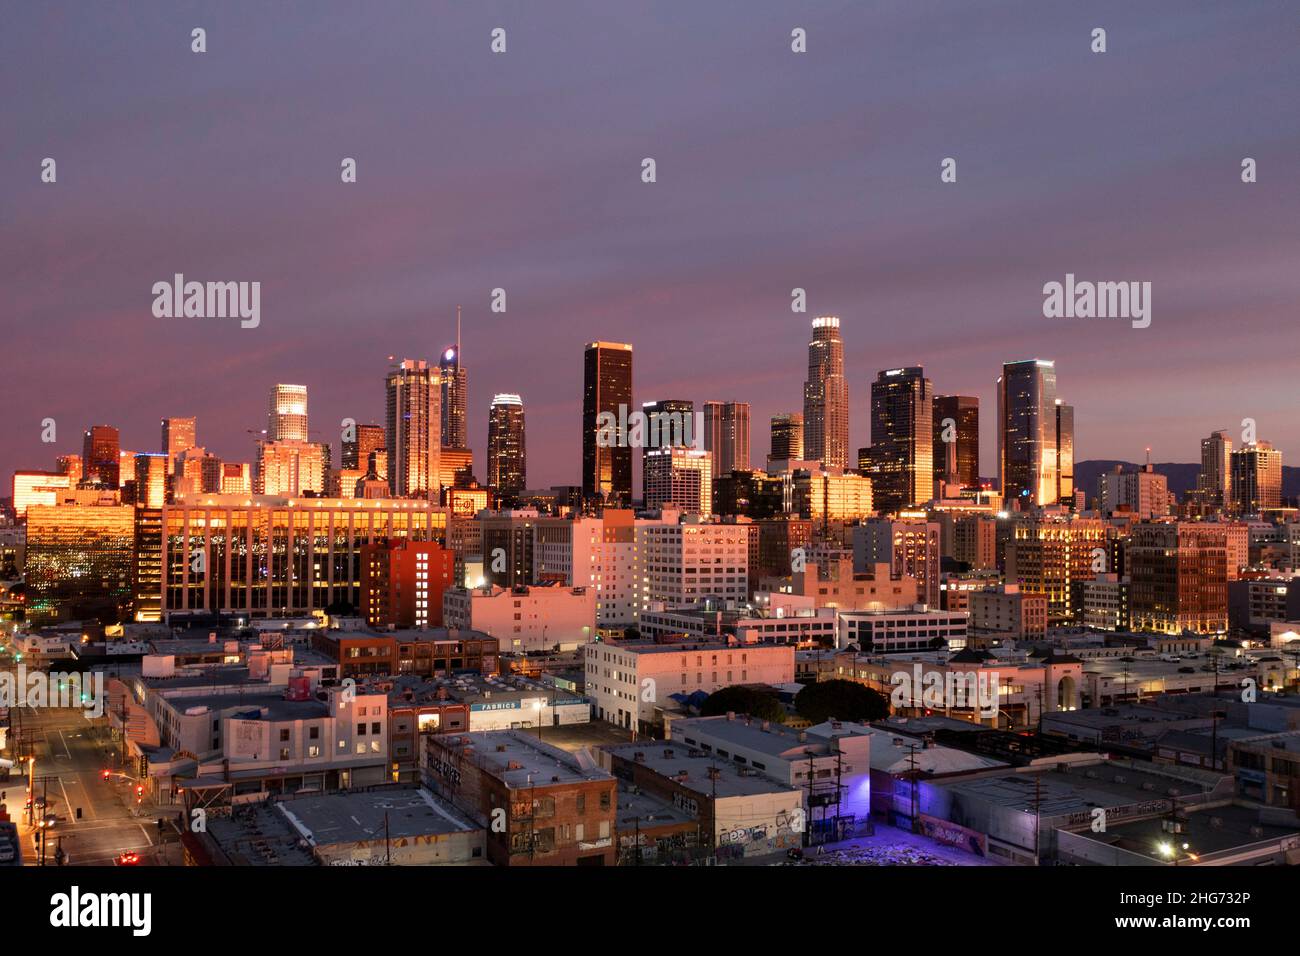 Vue aérienne d'avant l'aube sur les gratte-ciel du centre-ville de Los Angeles avec un lever de soleil coloré approchant Banque D'Images